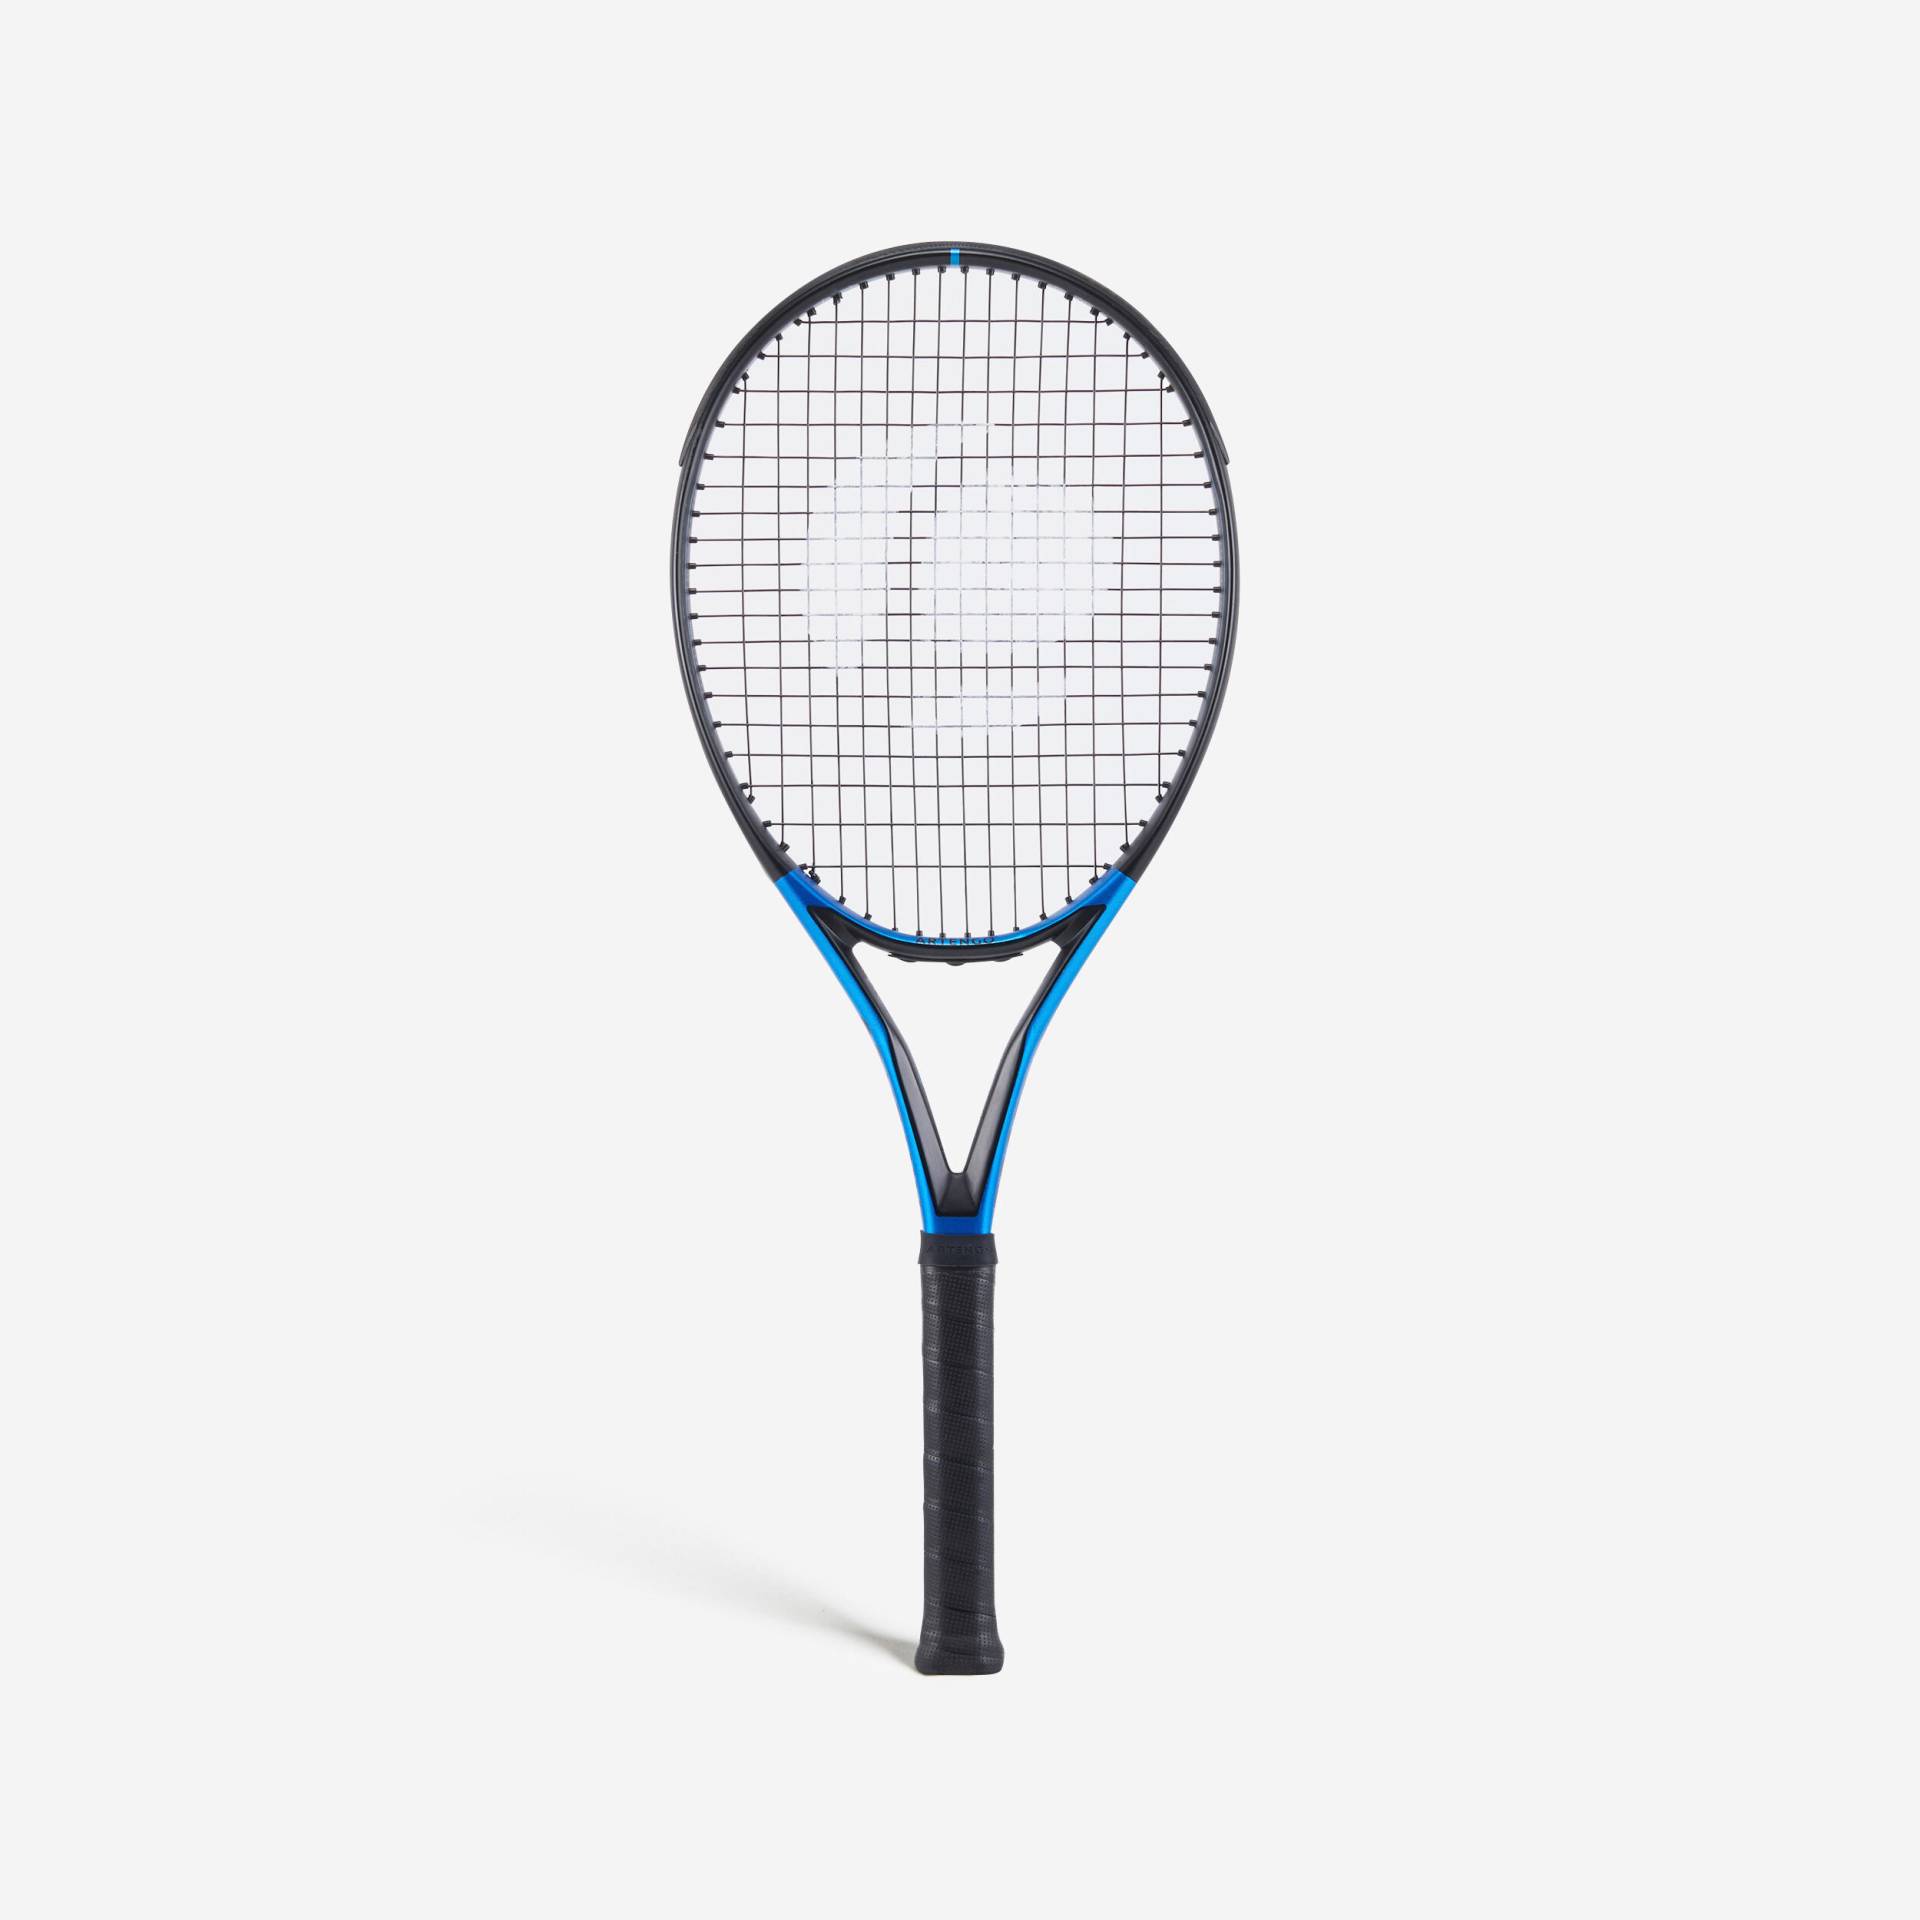 Erwachsene Tennisschläger - TR930 Spin schwarz blau 285 g von ARTENGO